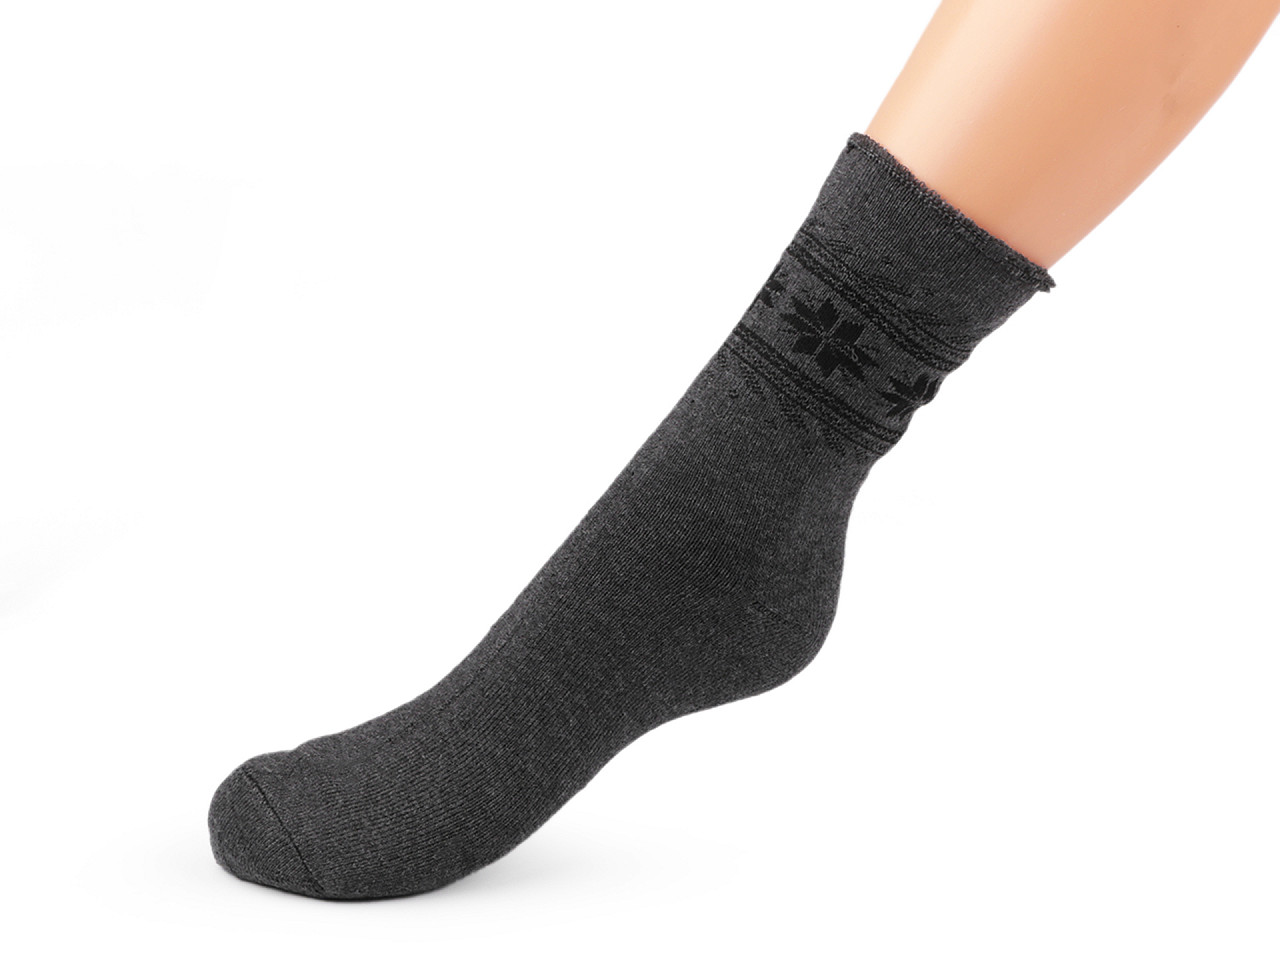 Herren Socken mit Gesundheitsbund Thermo, Größe: 39 - 42, Mix zufällig, 2 Paar